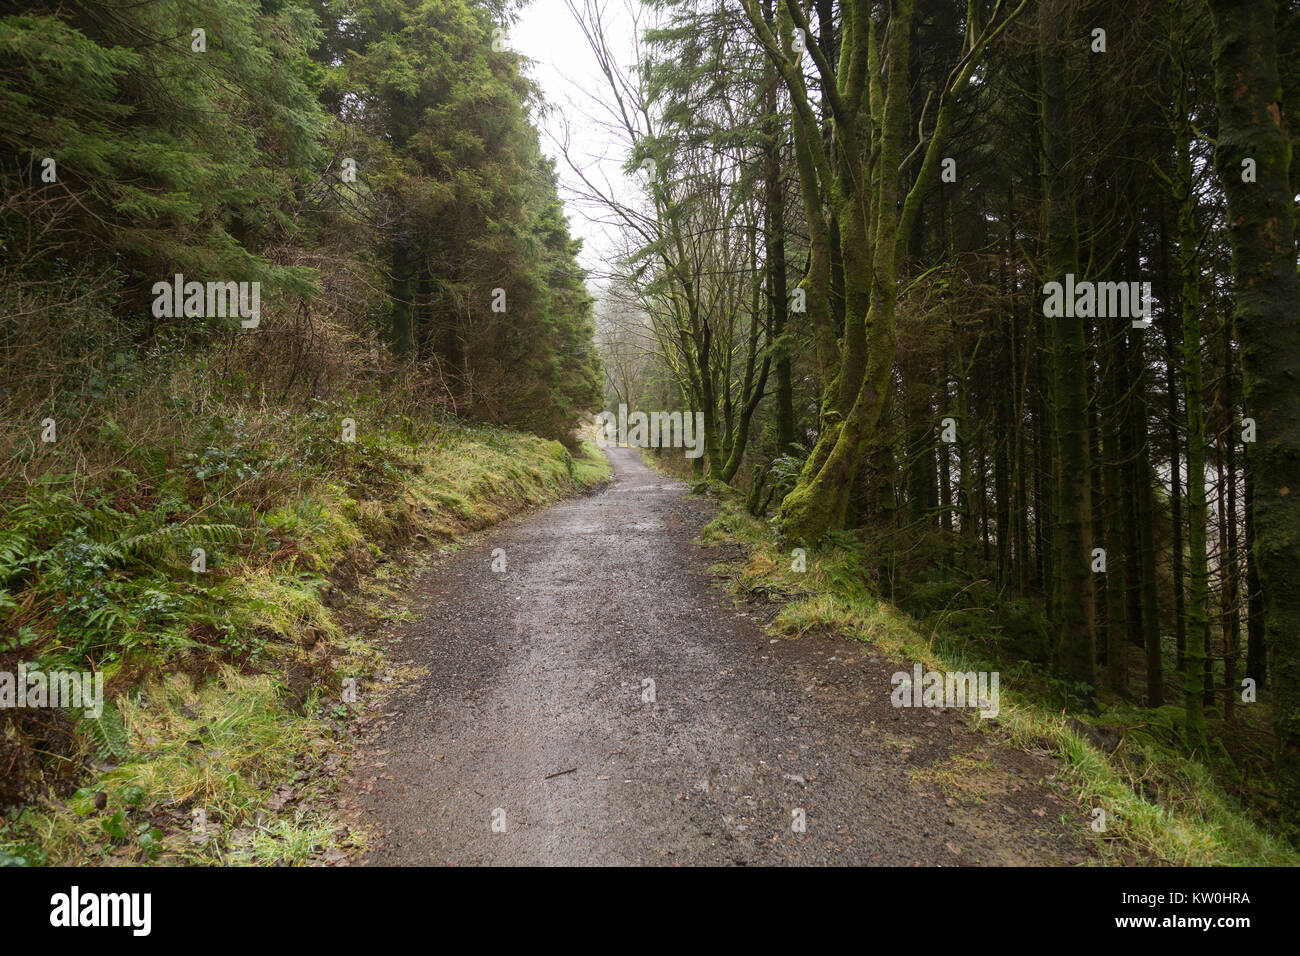 Una pista forestal en Glenariff, con verdes árboles caducifolios y coníferas. Foto de stock